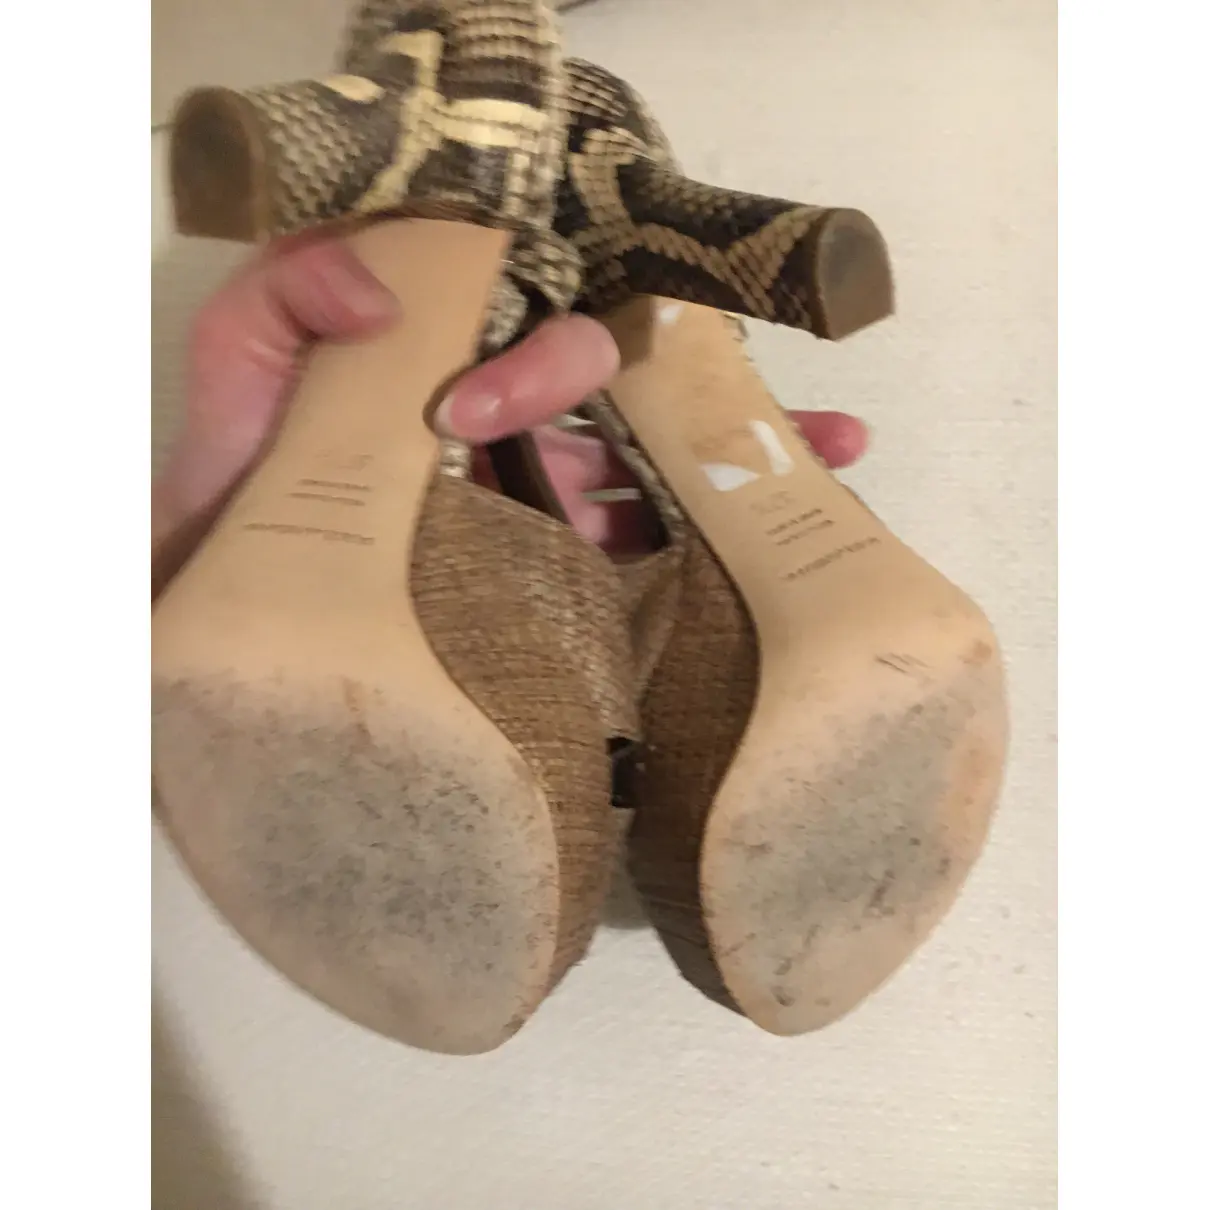 Python sandal Dolce & Gabbana